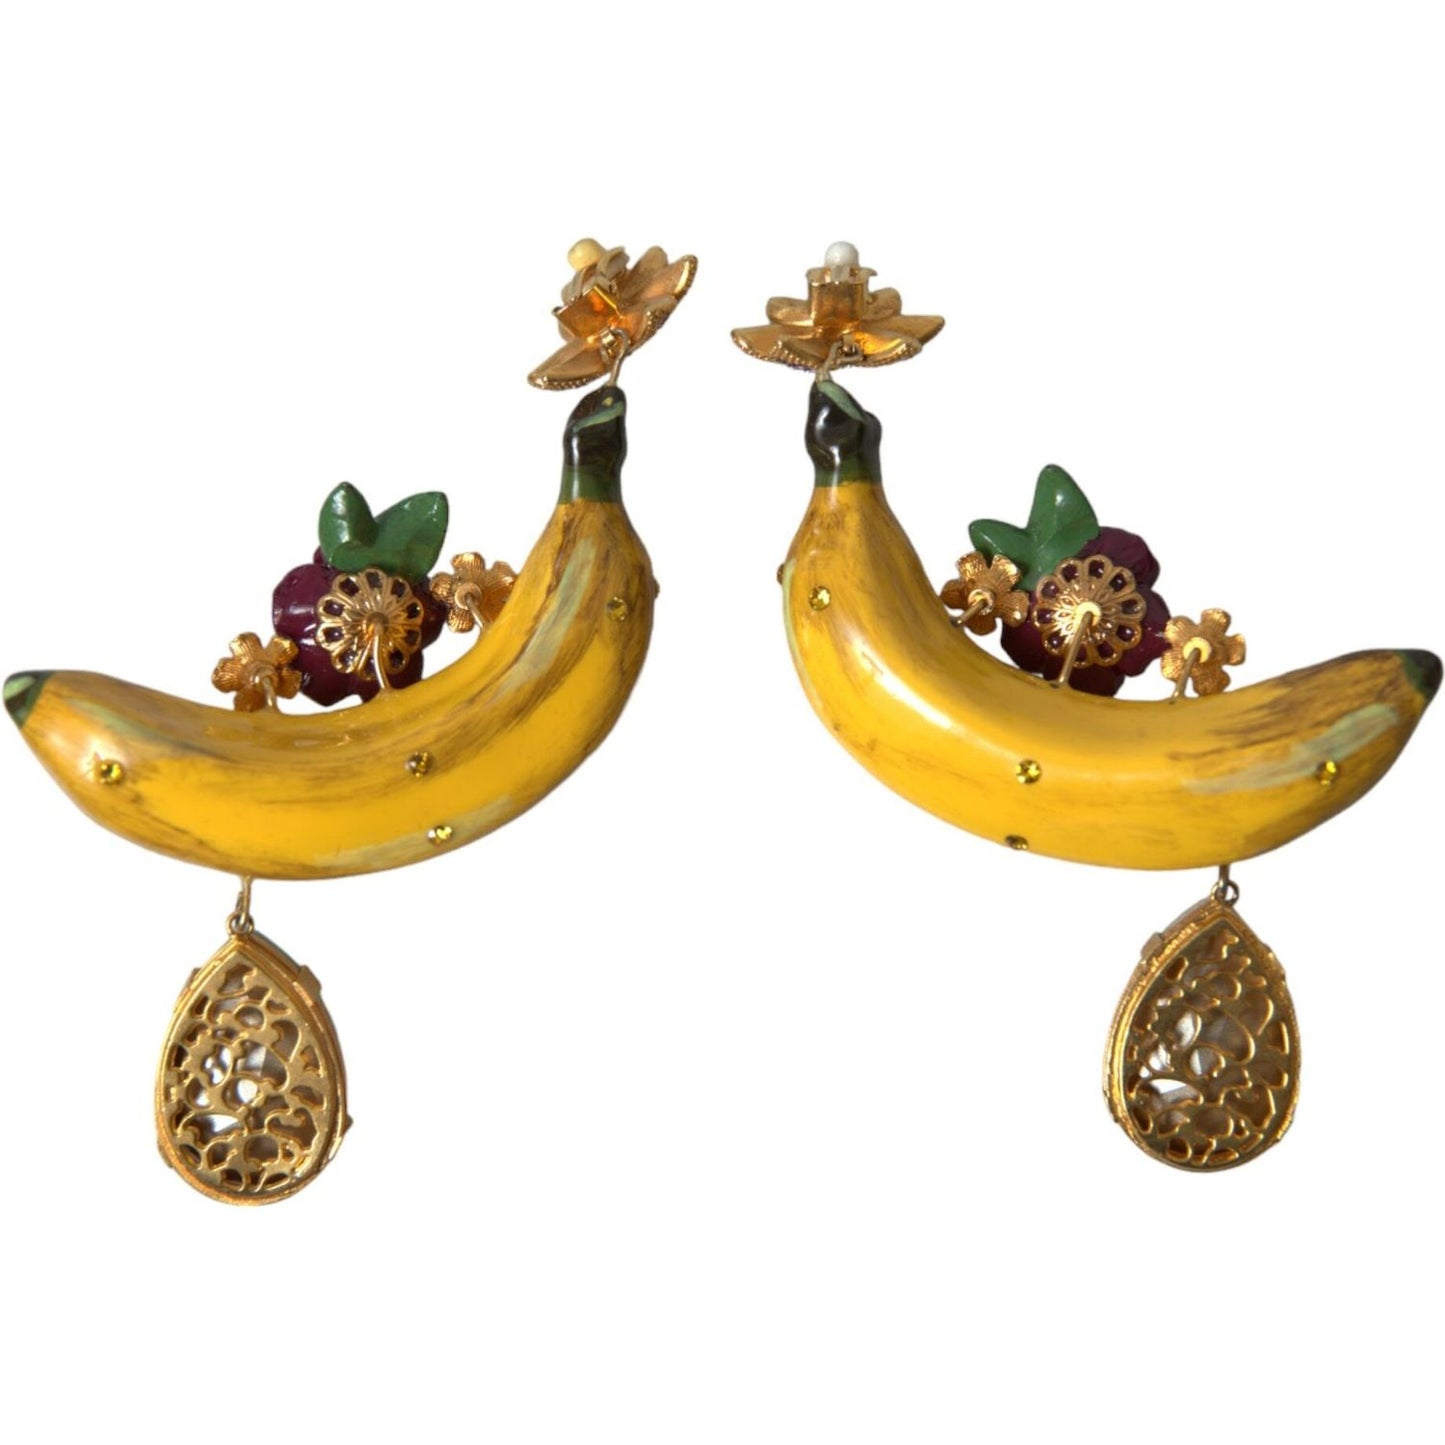 Dolce & Gabbana Chic Clip-on Banana Dangle Earrings chic-clip-on-banana-dangle-earrings